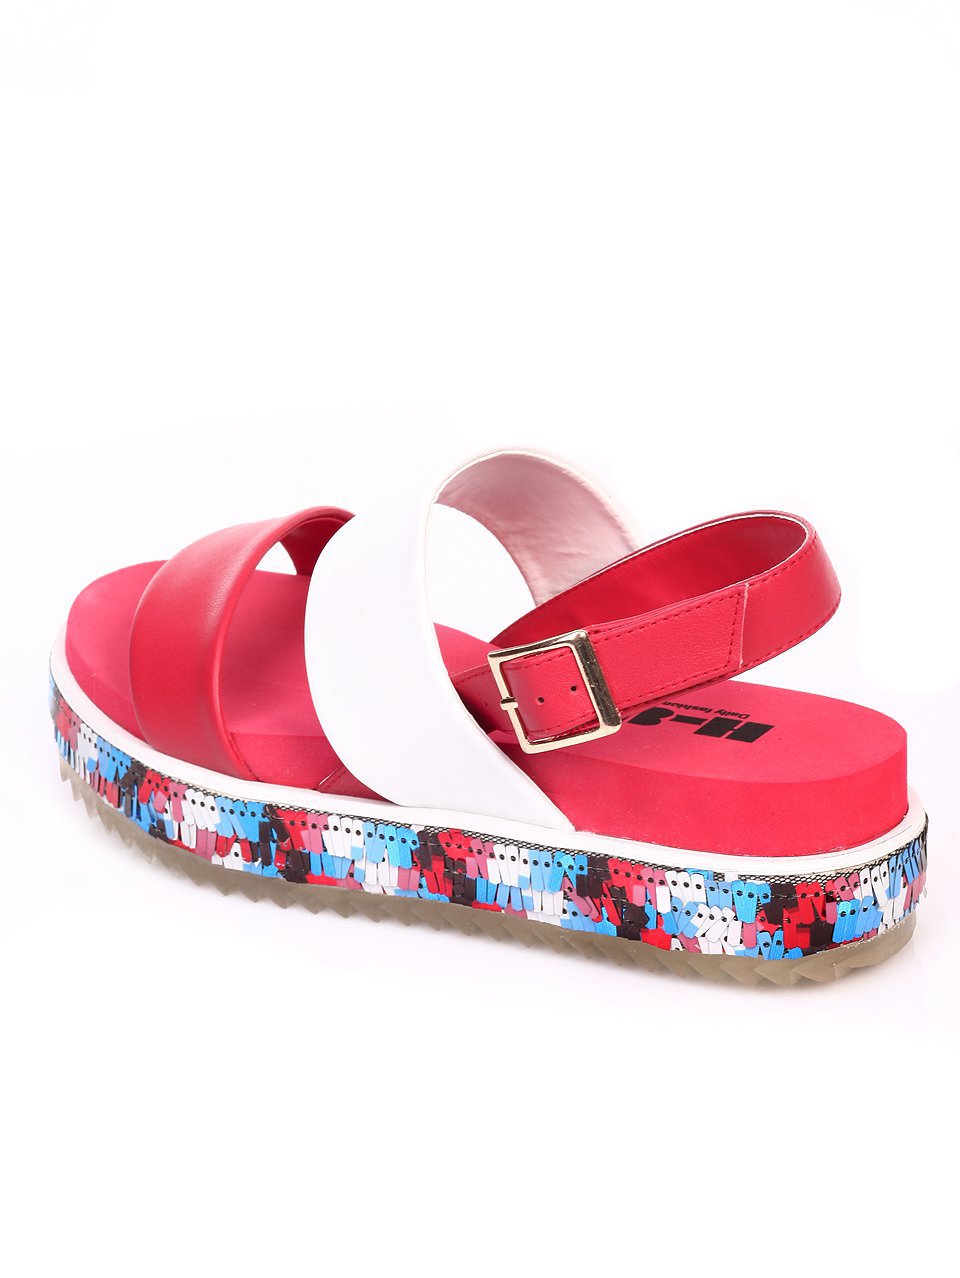 Ежедневни дамски сандали от естествена кожа 4AR-17458 red/white